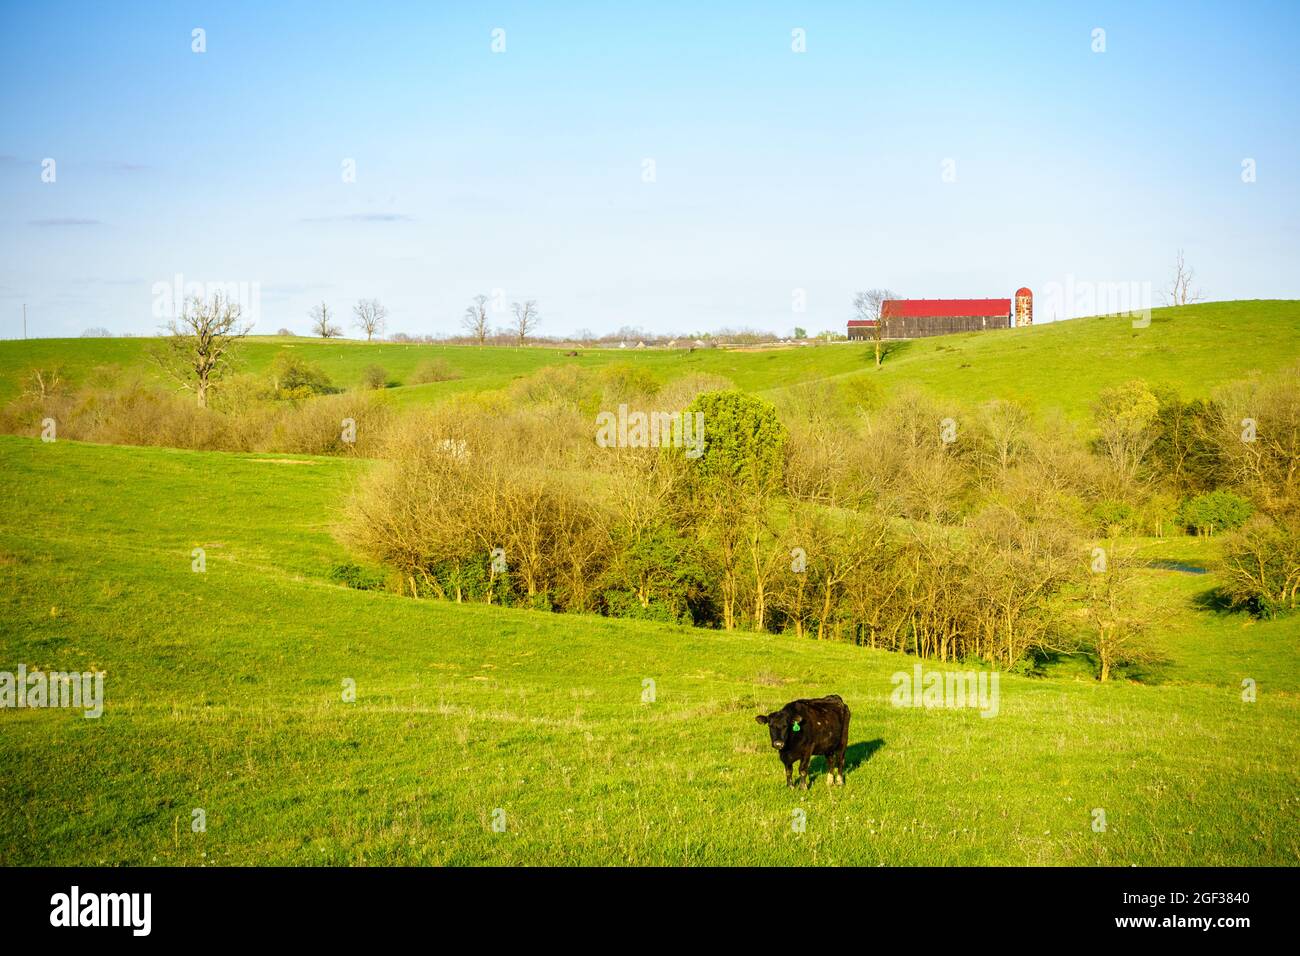 Una vaca negra en un pasto en Kentucky Central Foto de stock